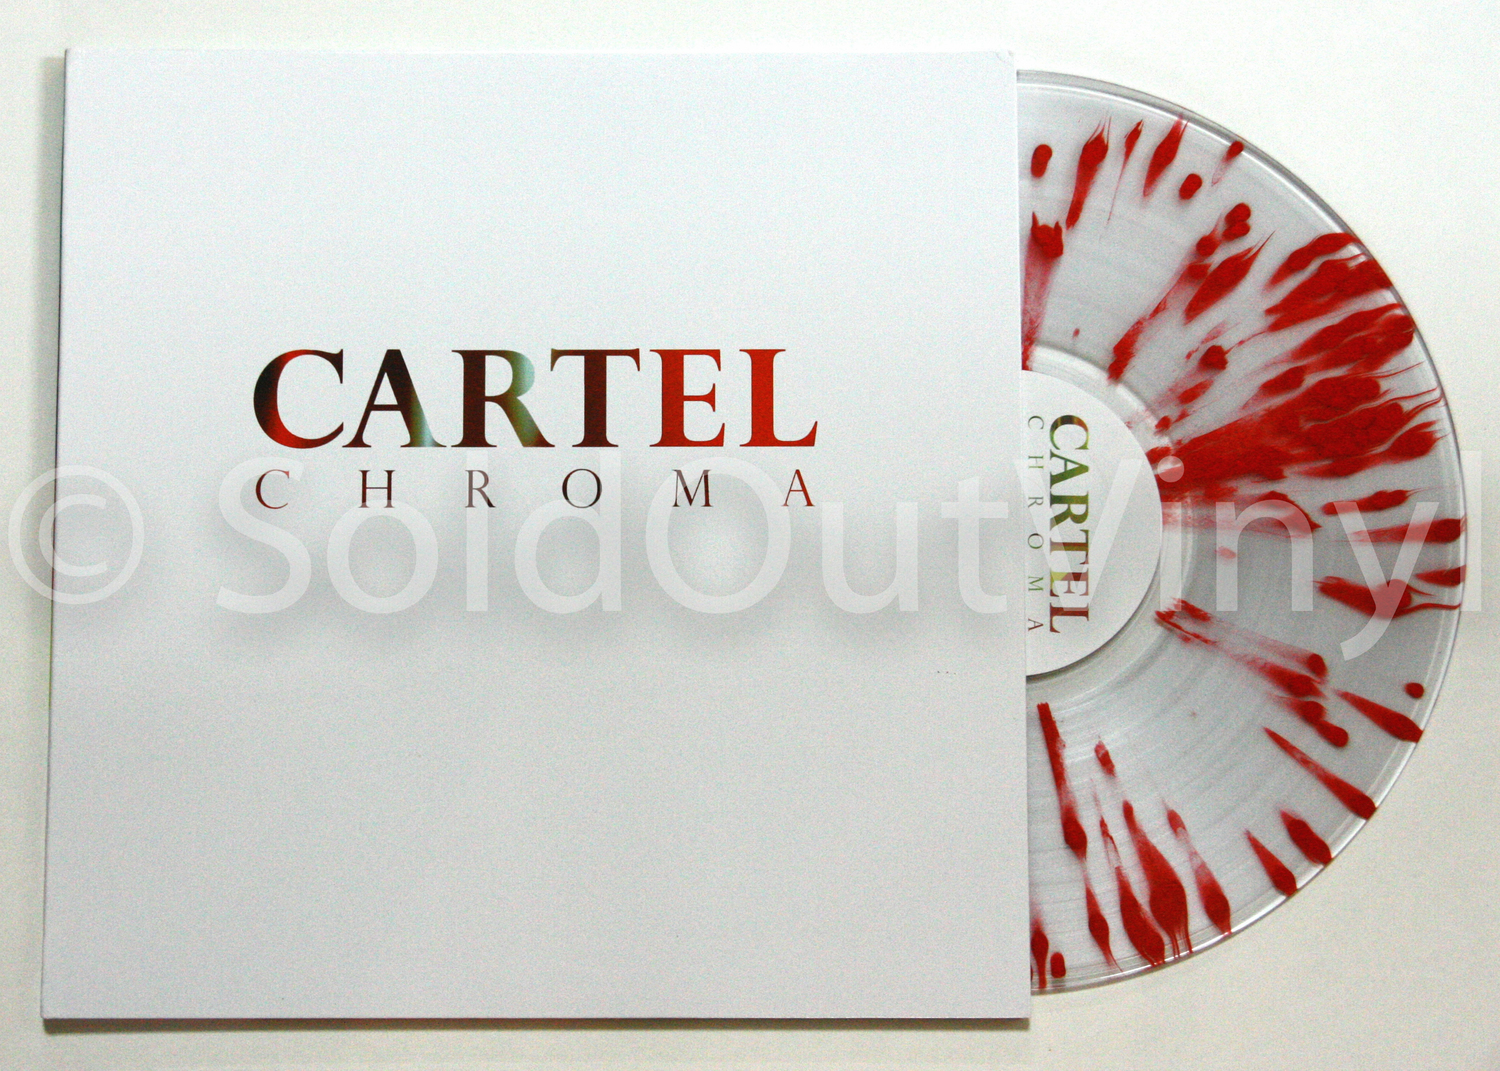 Cartel Cycles Vinyl